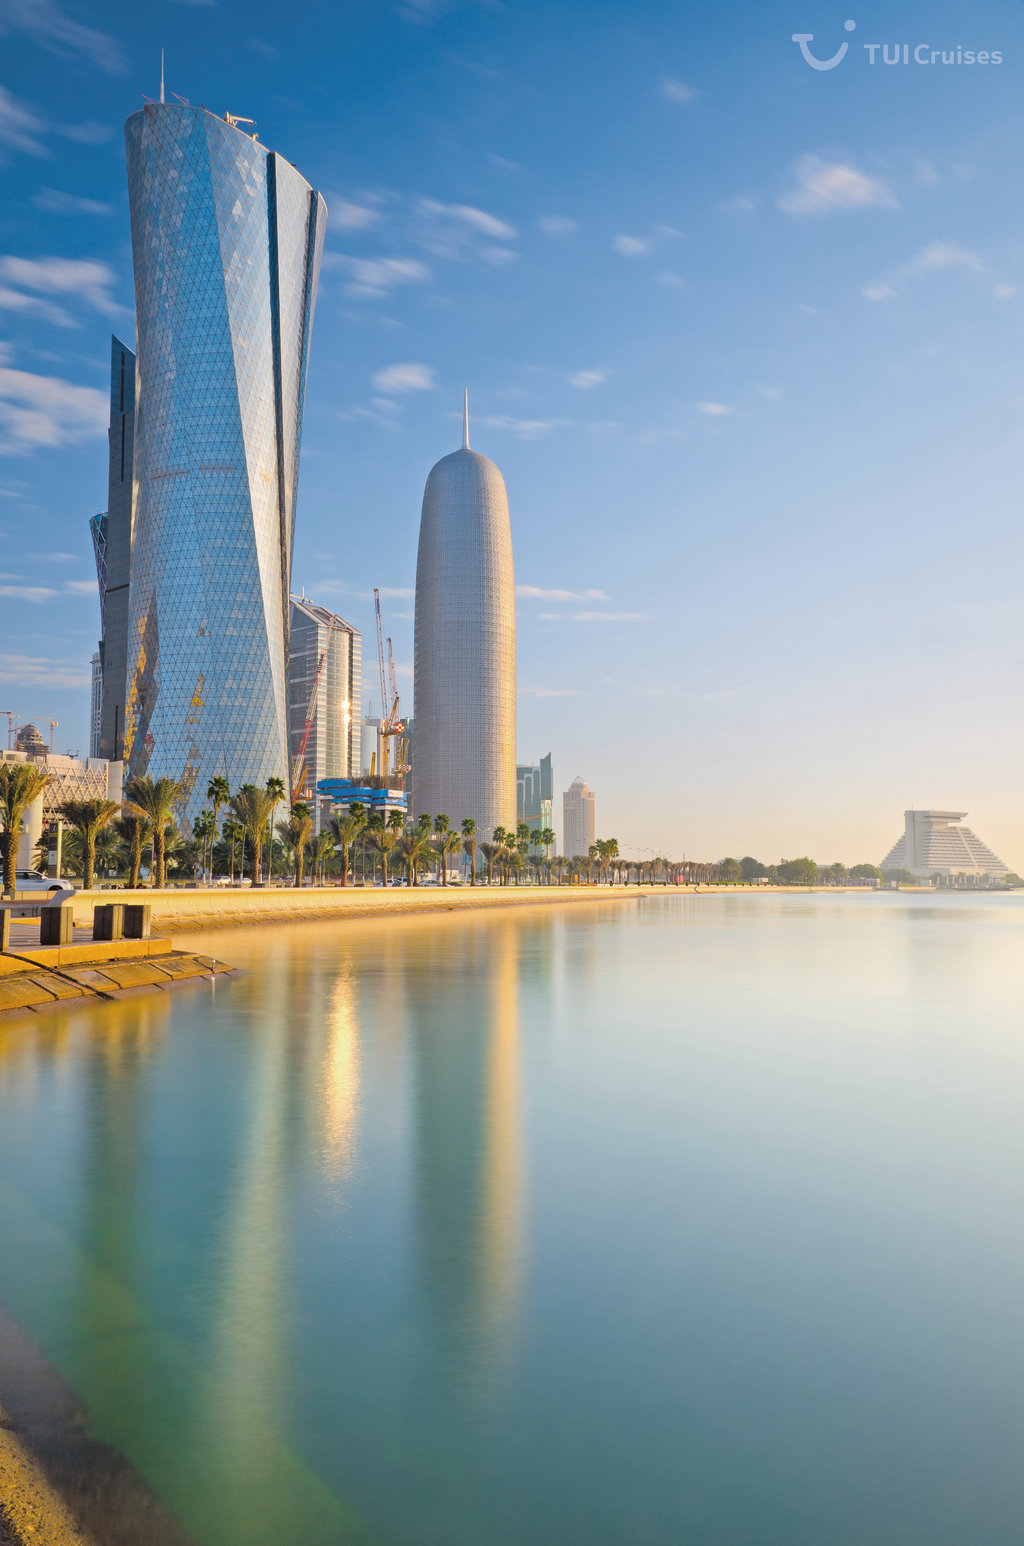 Mein Schiff Reiseziel: Der Al Bidda Tower and das Burj Qatar in Doha/Katar